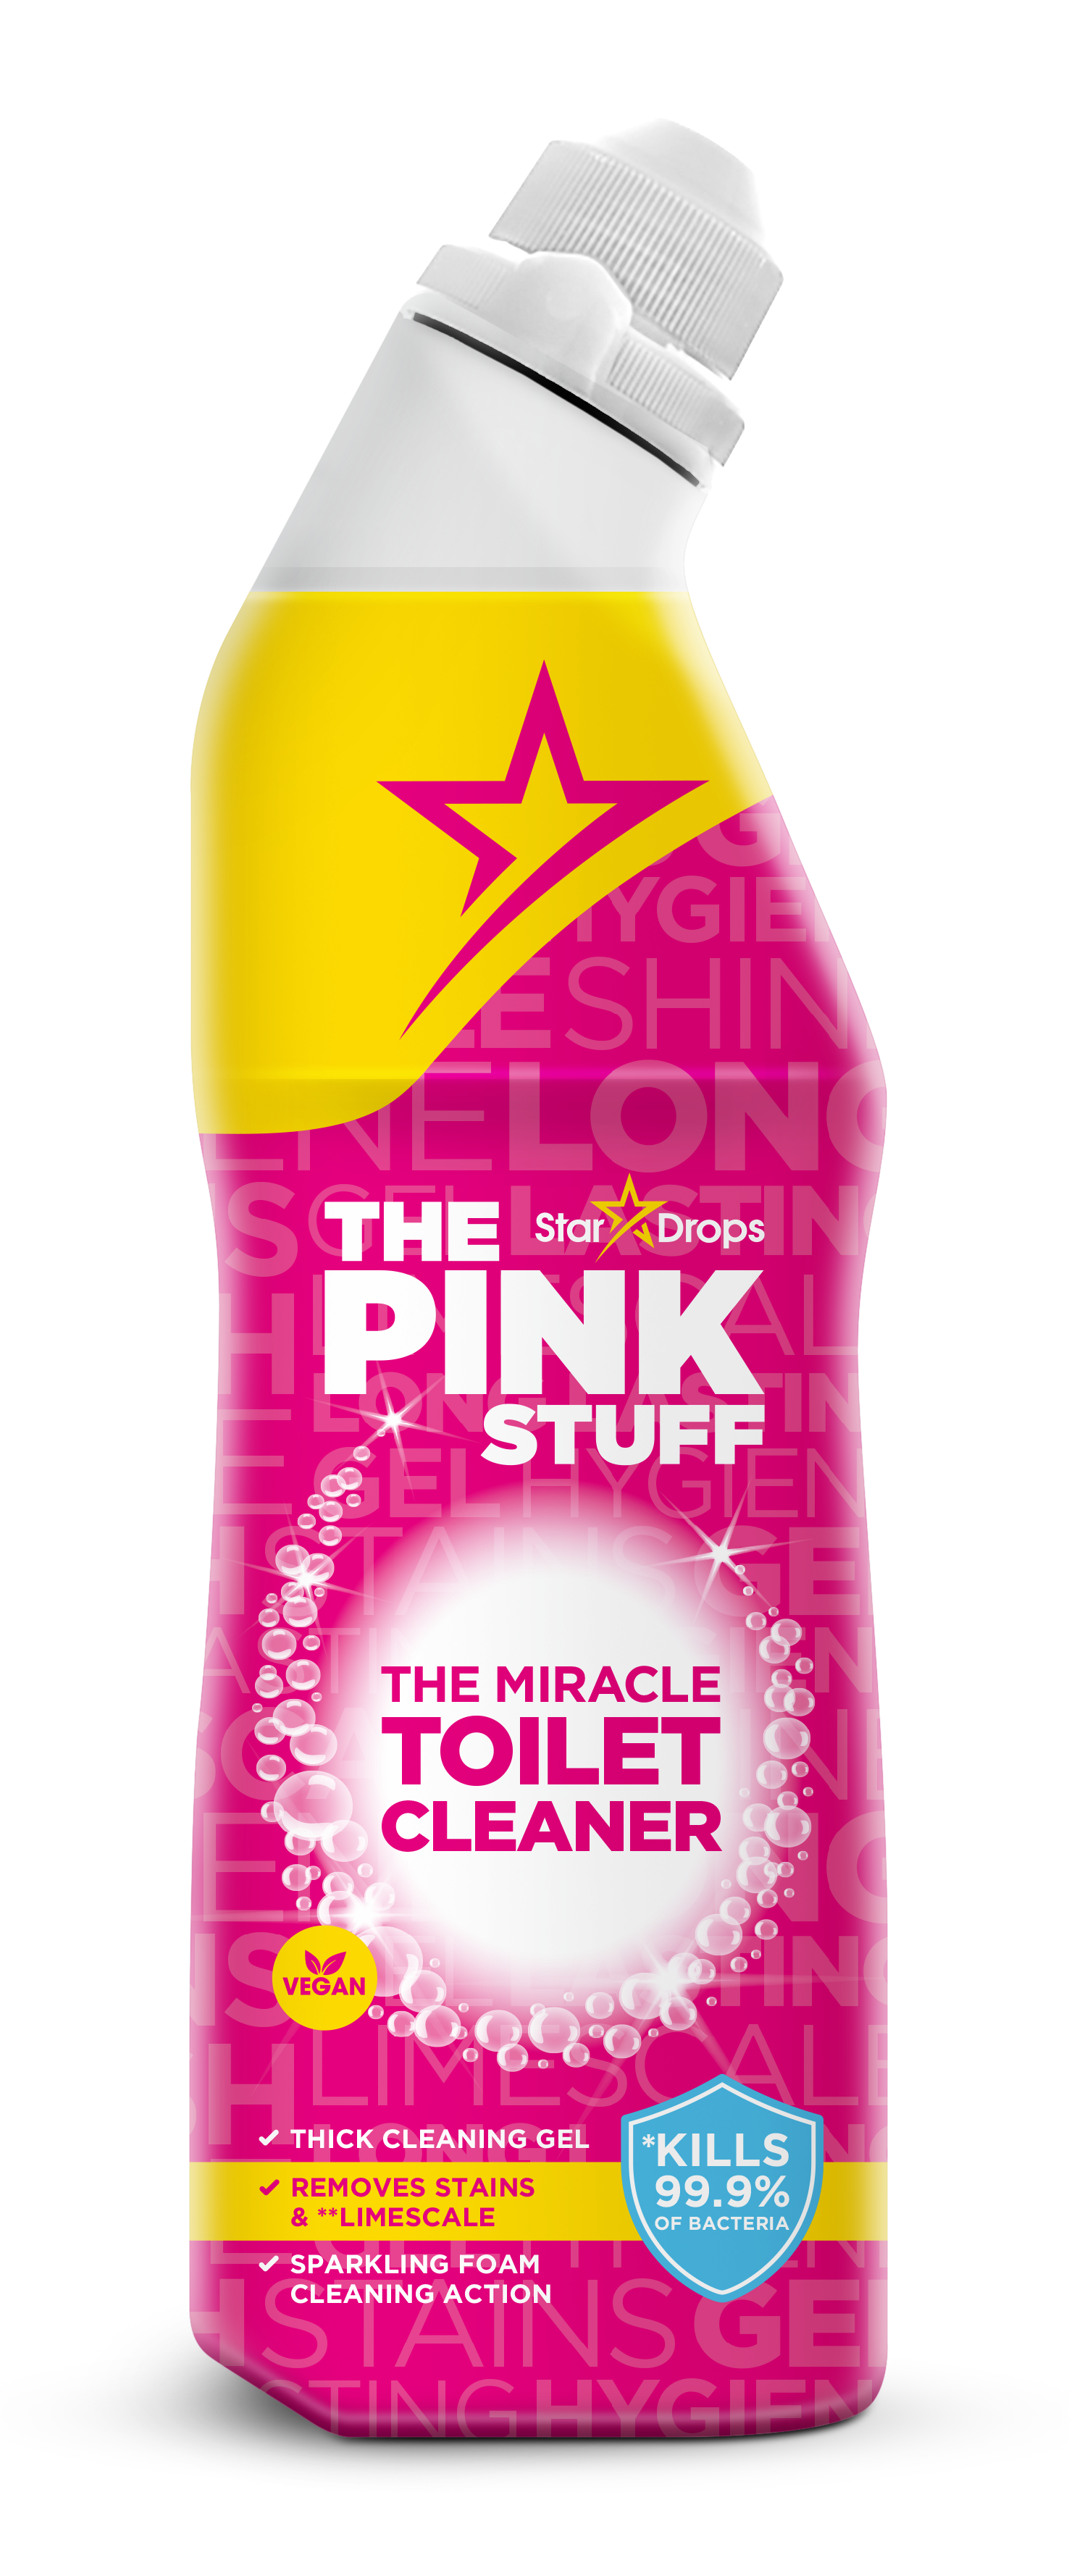 The Pink Stuff Bathroom Essentials Pack – Homeporium Australia